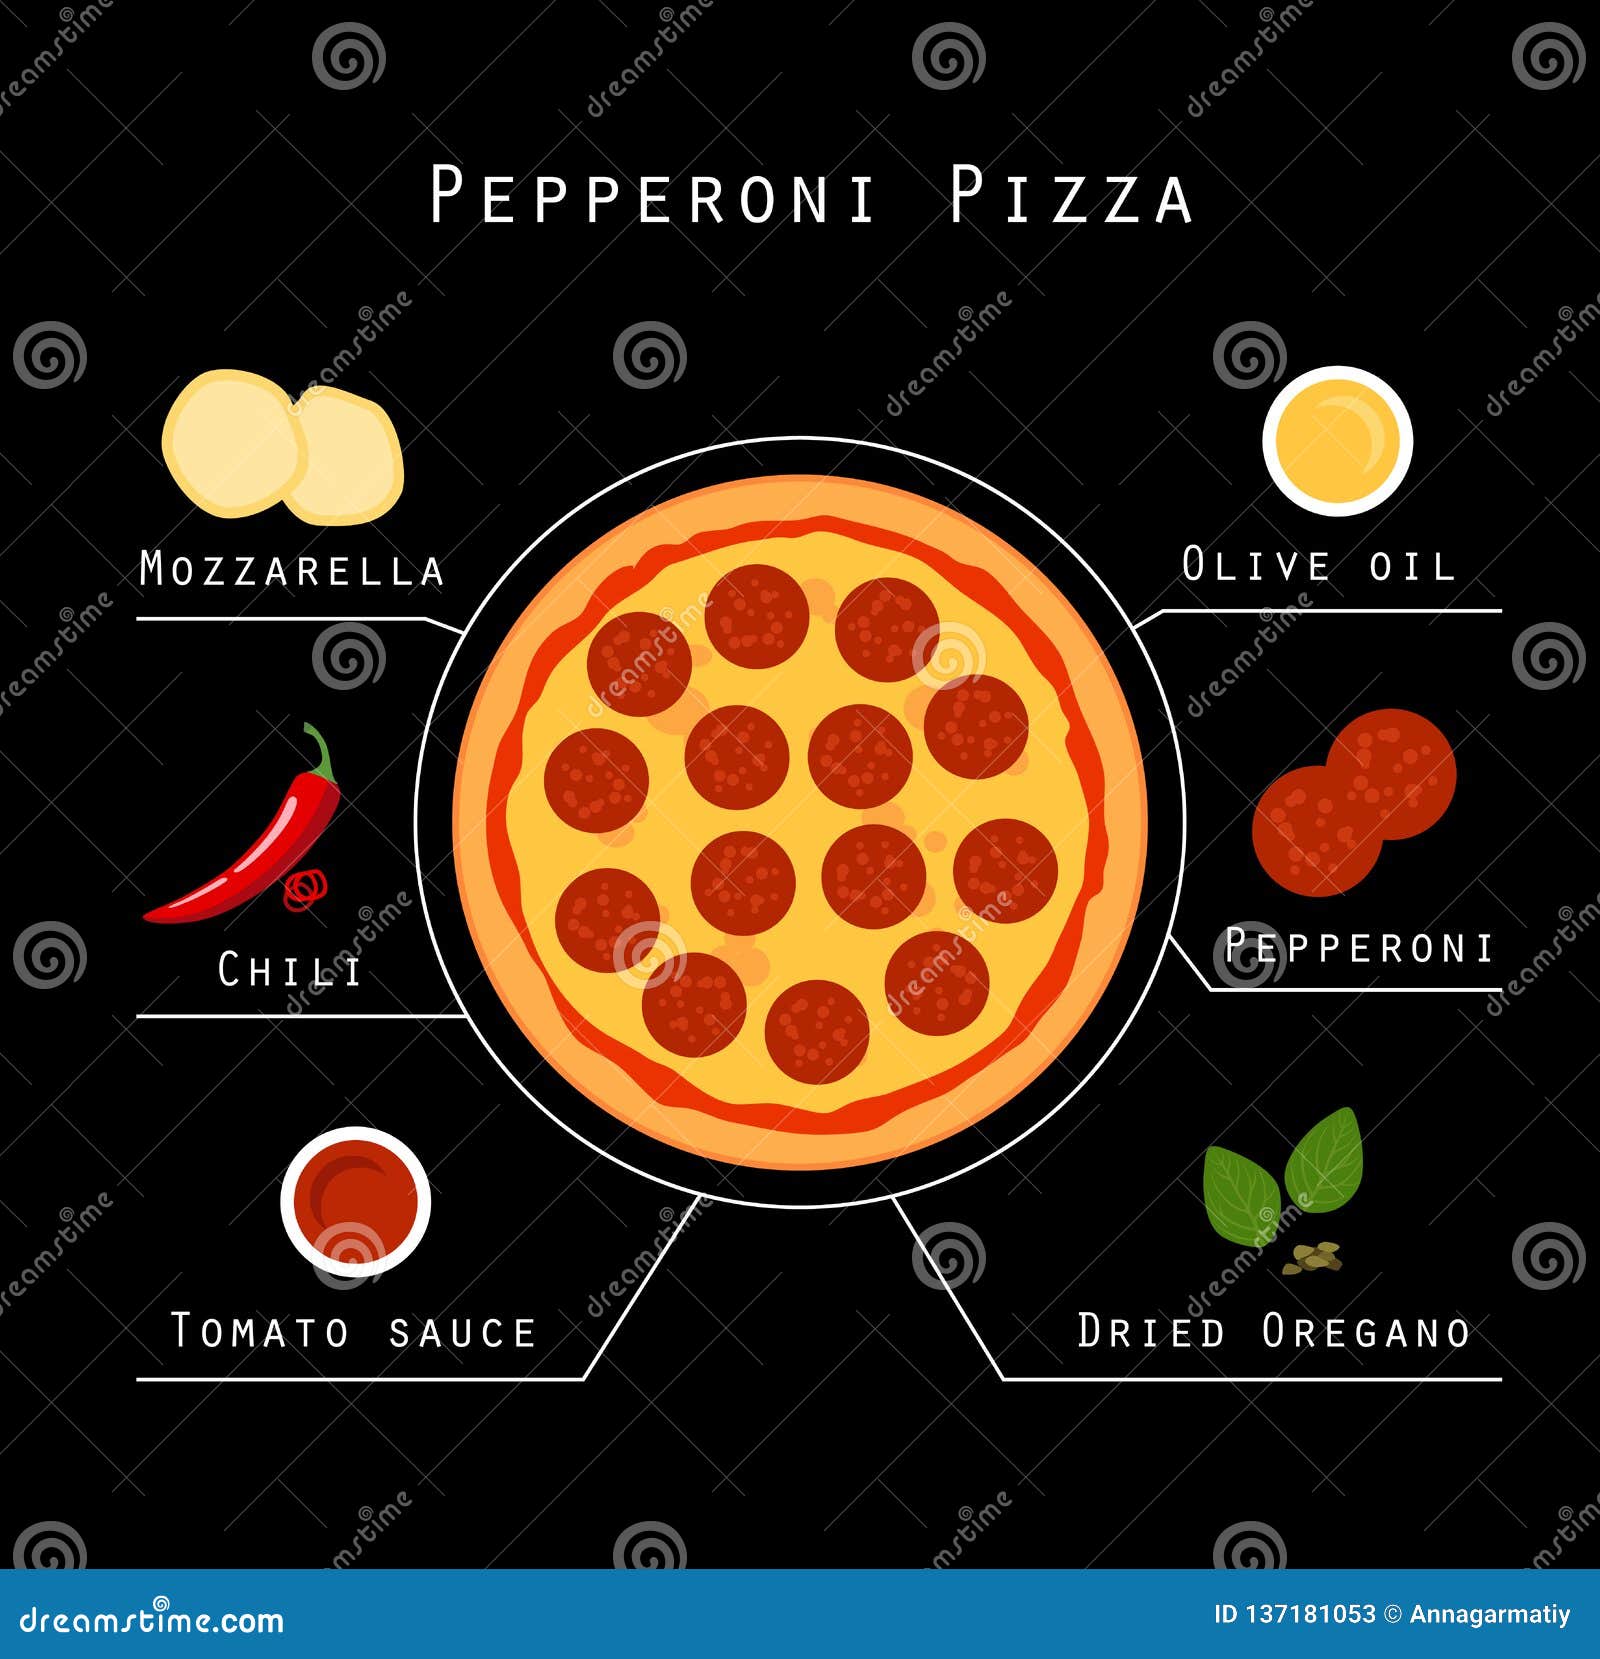 технологическая карта приготовления пиццы пепперони фото 87